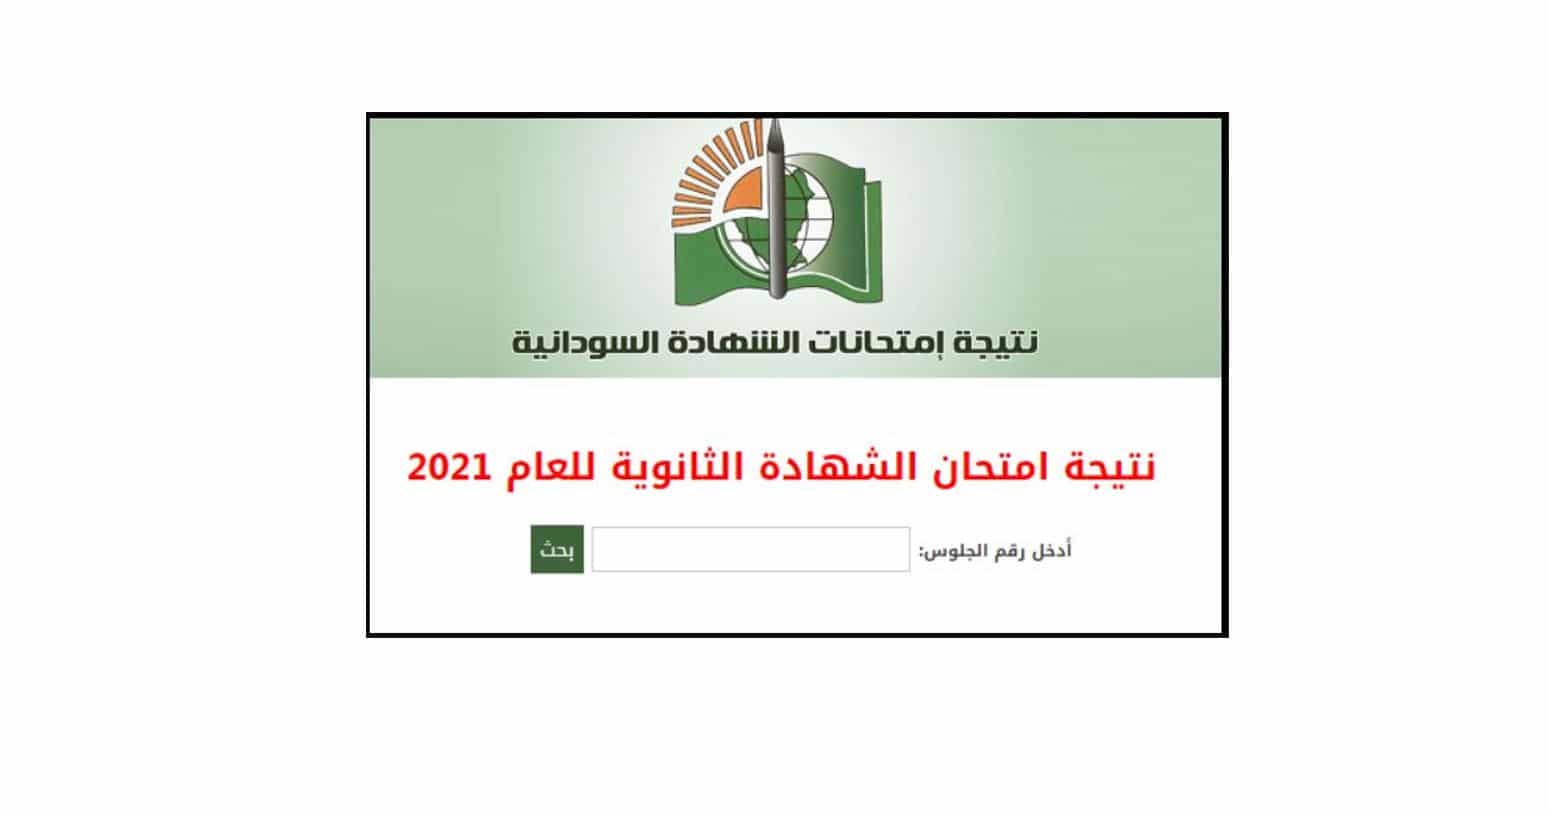 نتيجة الشهادة السودانية - معرفة نتيجة الشهادة السودانية بإدخال رقم الجلوس 2022 من خلال موقع الوزارة الرسمي